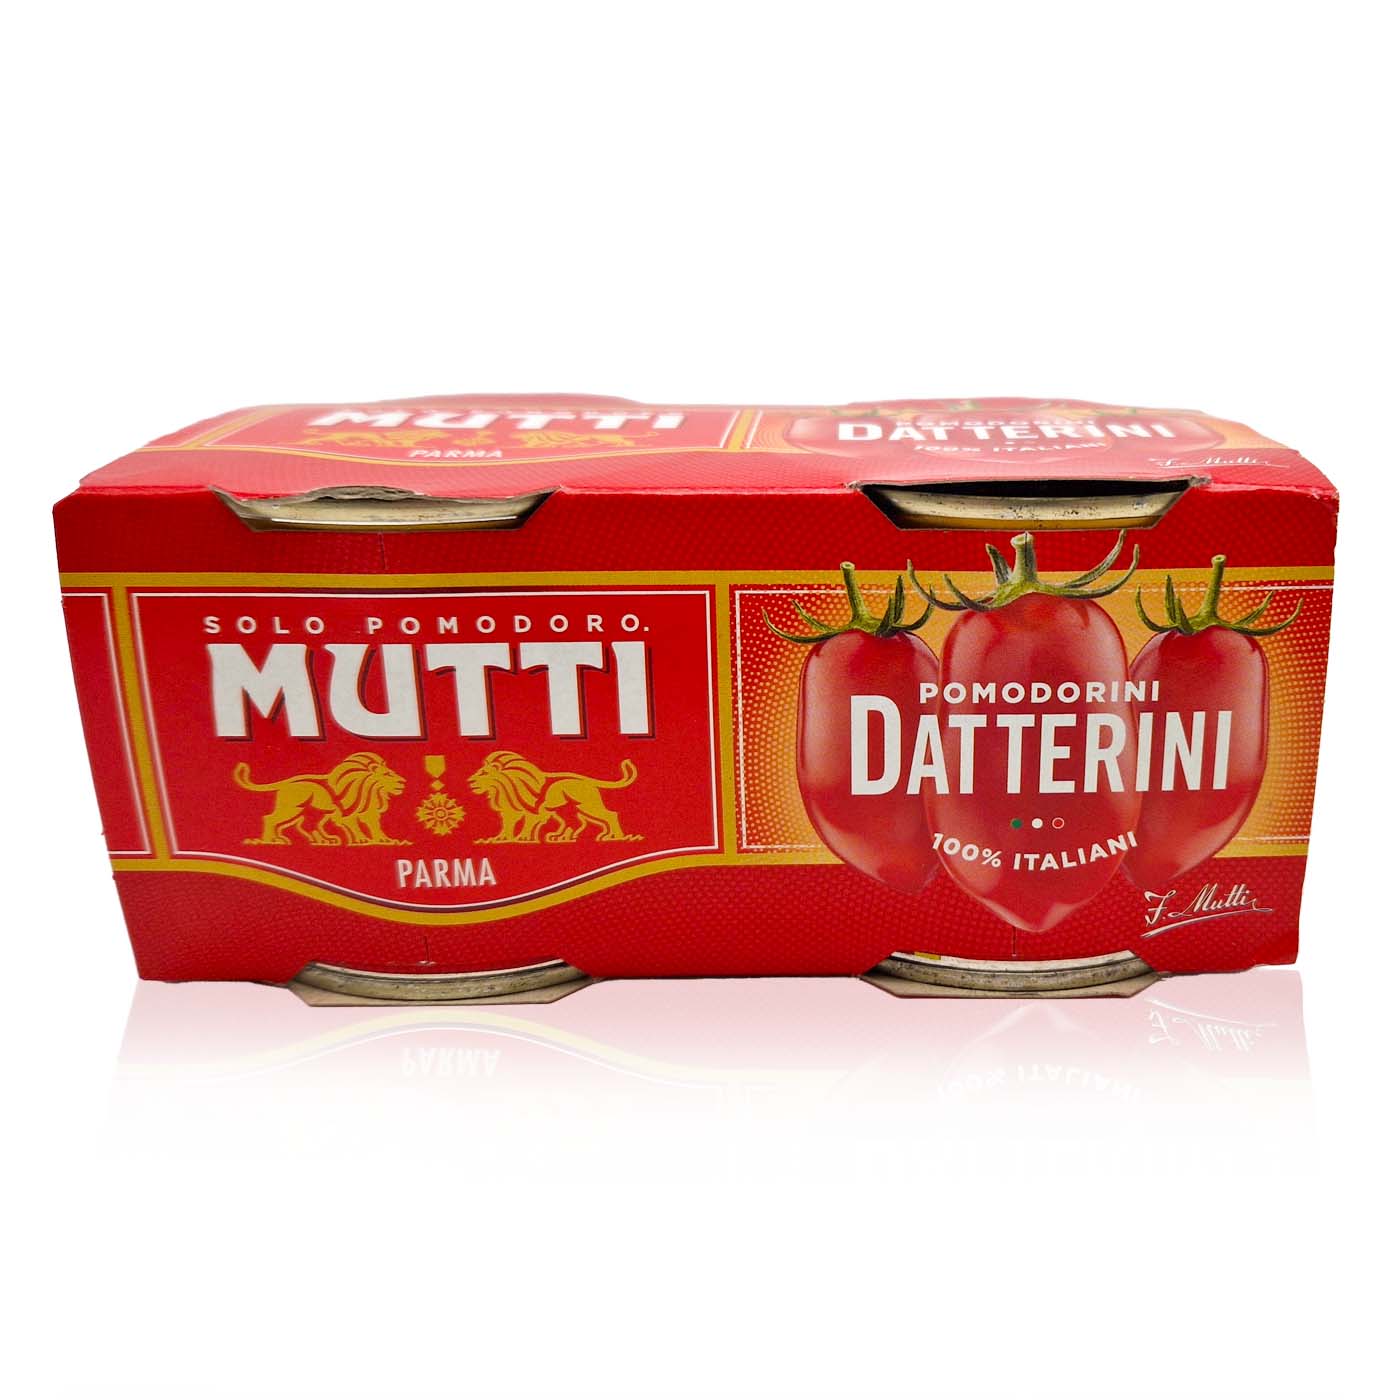 MUTTI Pomodorini Datterini - Datteltomaten in Tomatensaft - 2x0,2kg - italienisch - einkaufen.de